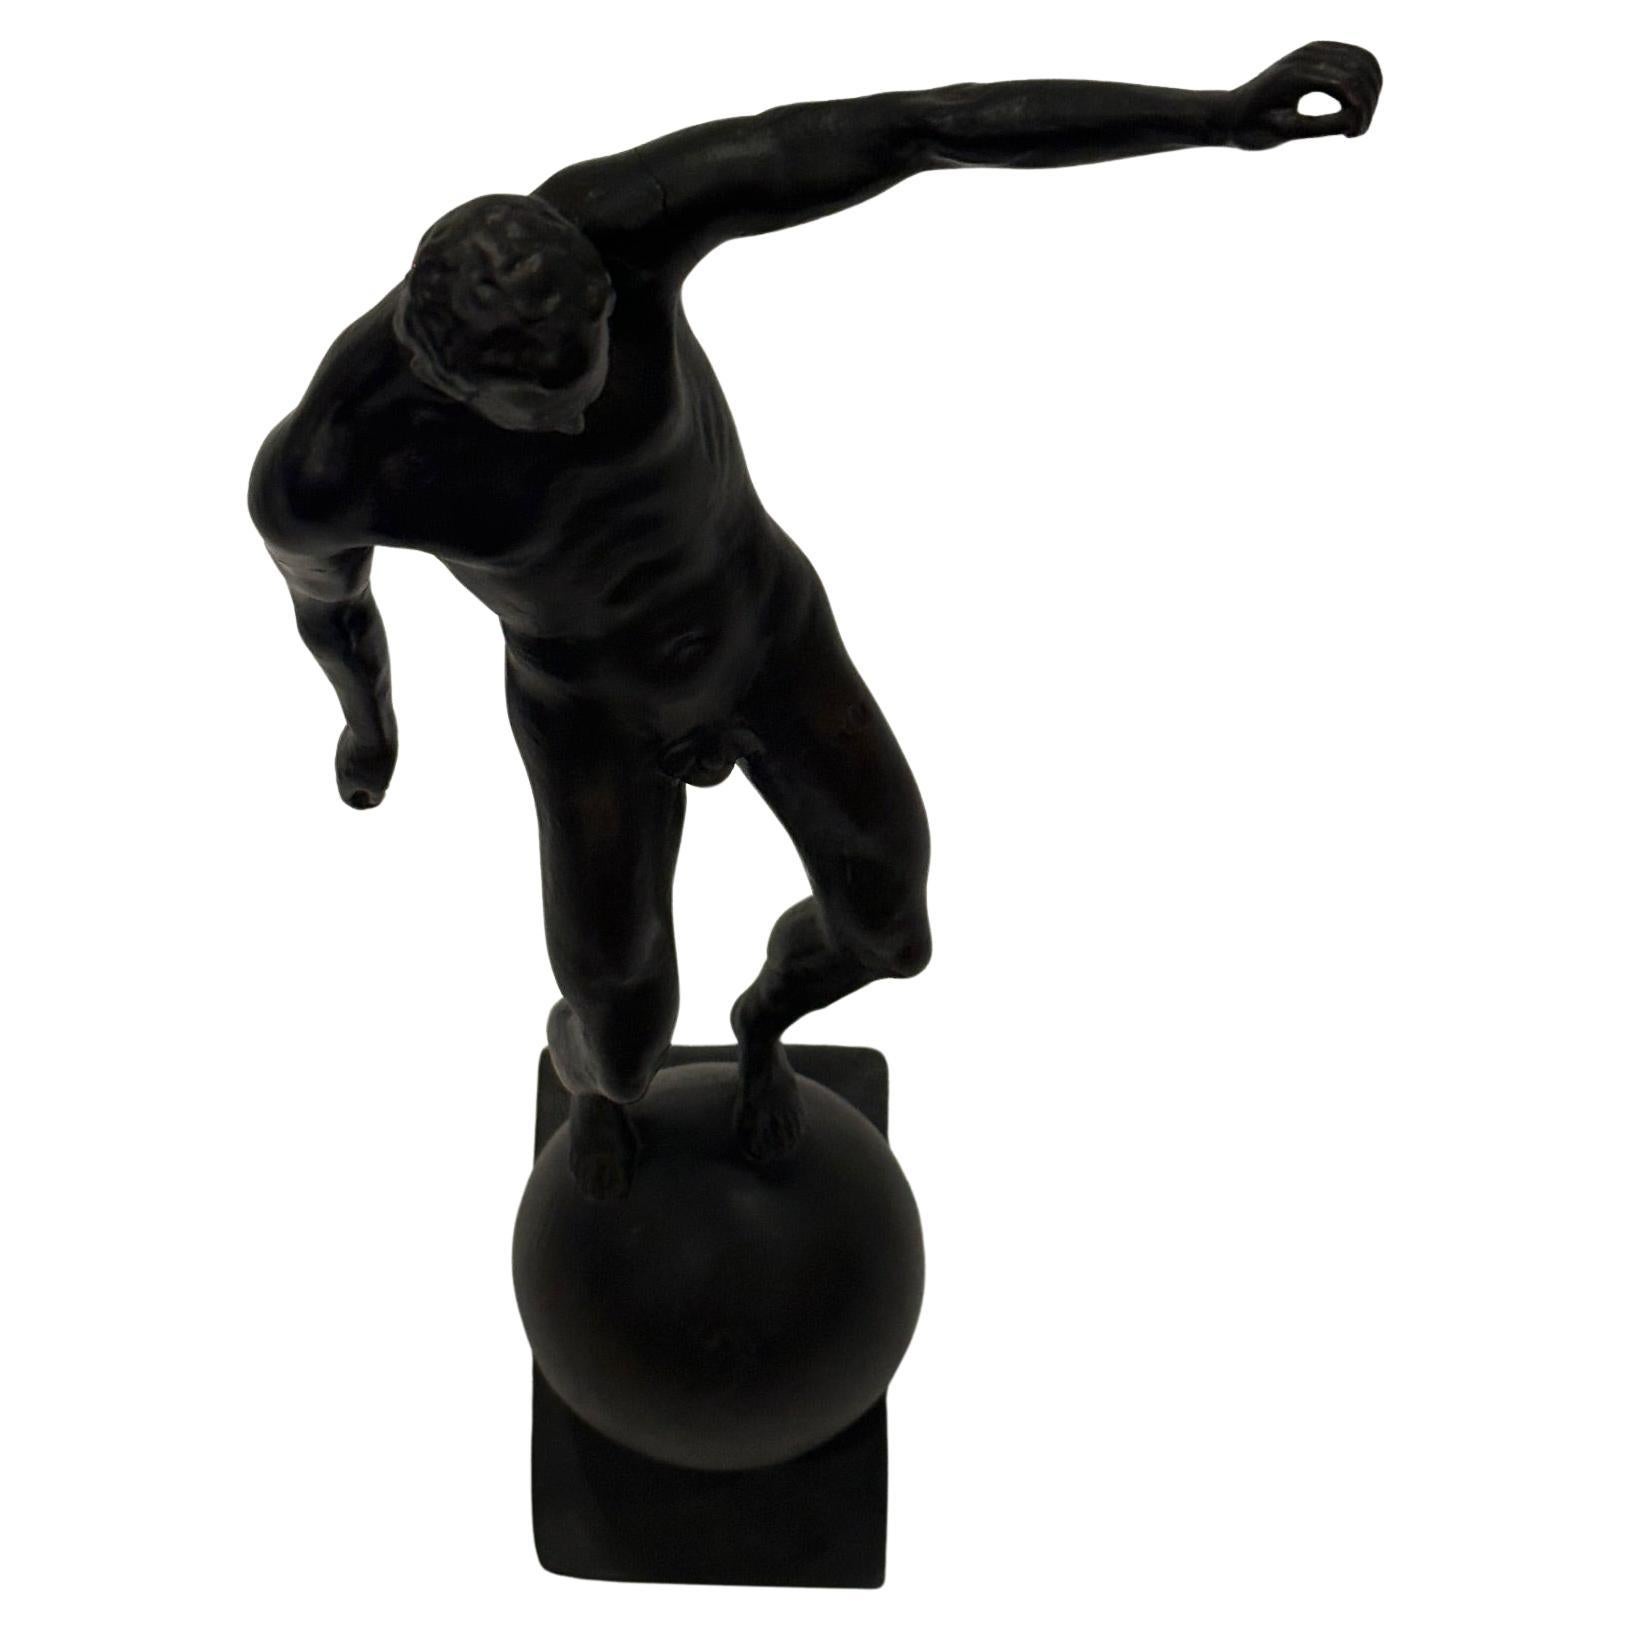 Remarquable sculpture classique en bronze d'un homme nu debout sur une boule, avec une incroyable attention aux détails et une merveilleuse gestuelle.